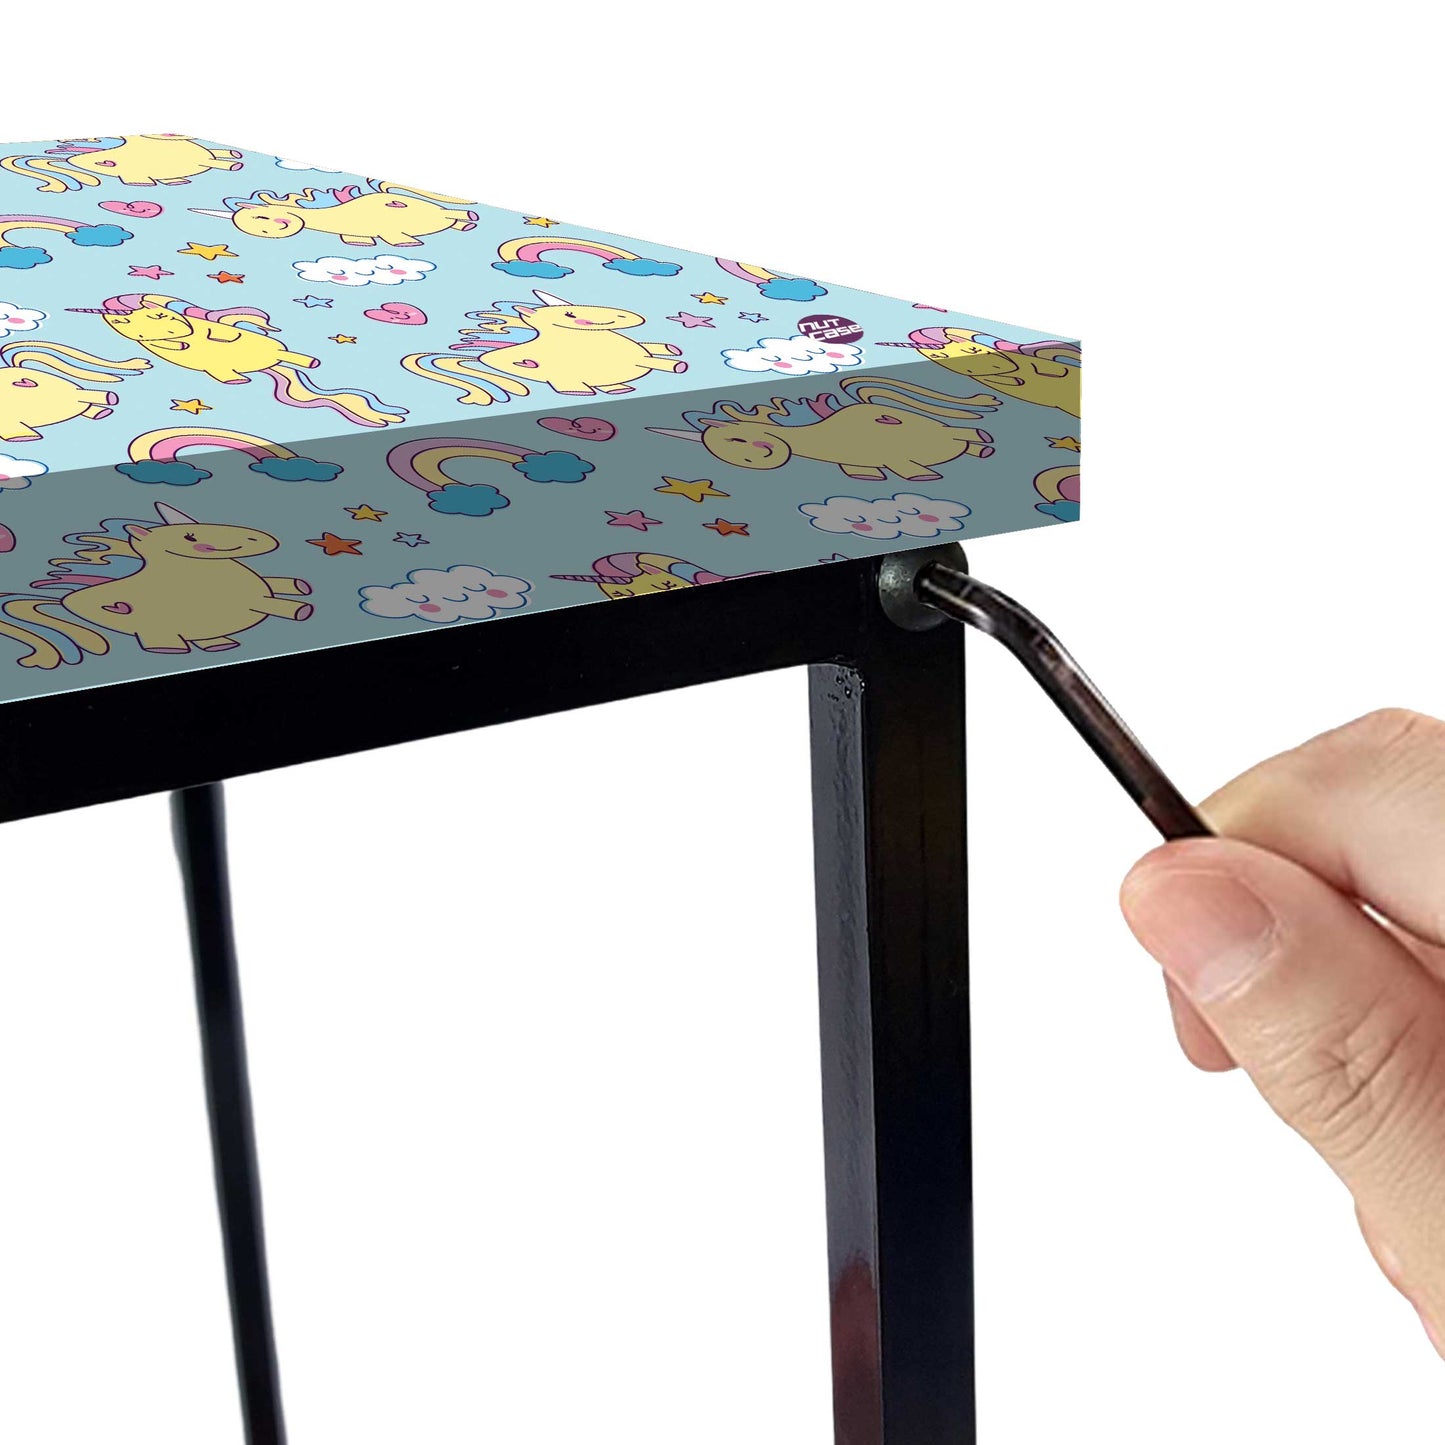 Designer Child Bedside Table for Bedroom - KIDS Nutcase